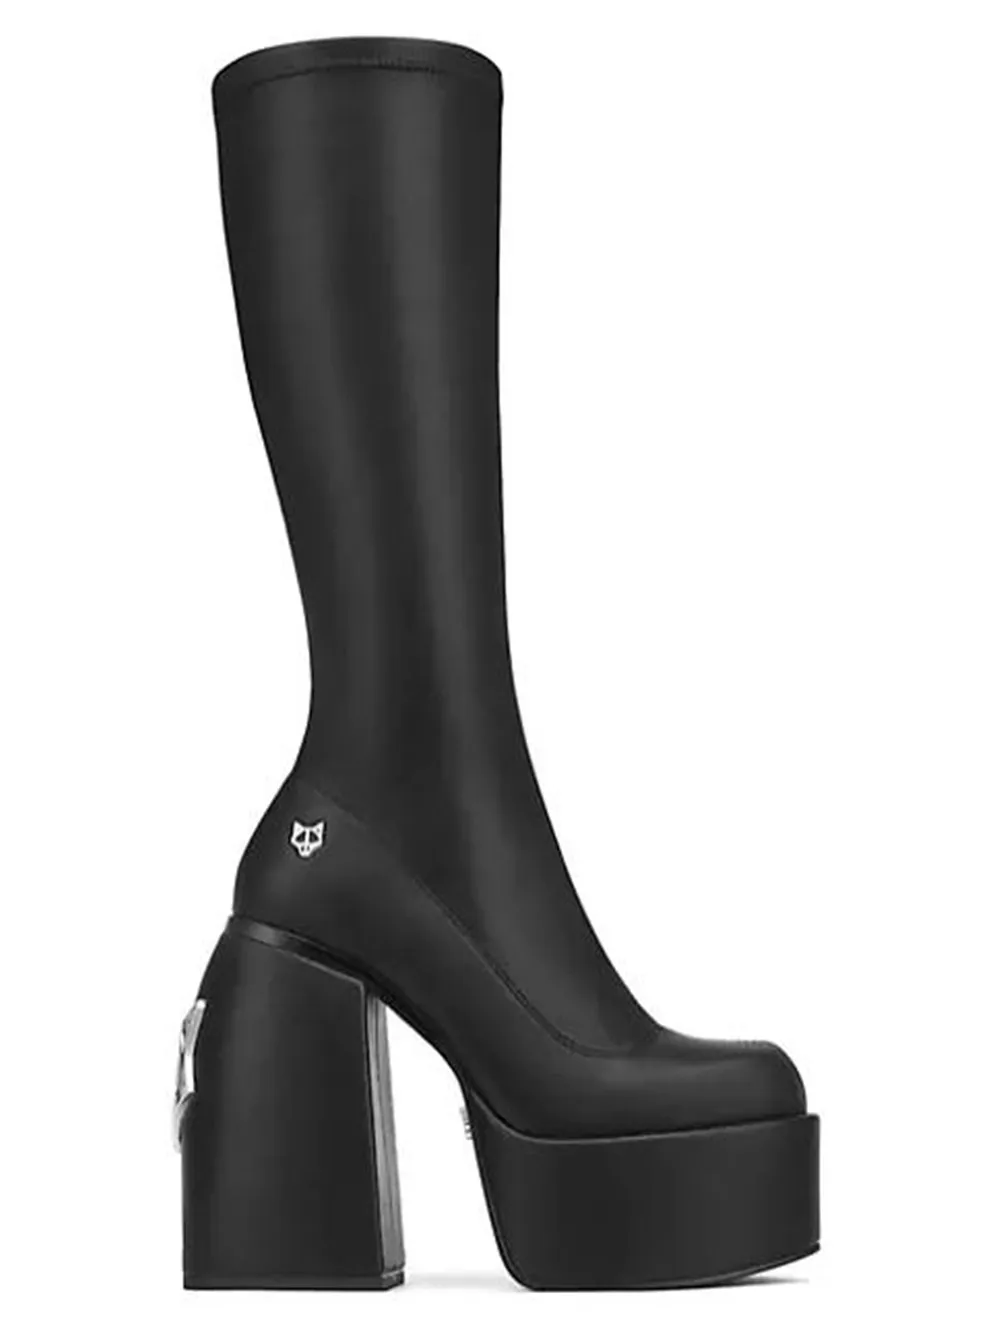 Wolfe Spice-Botas hasta la rodilla para mujer, zapatos elásticos con plataforma y logotipo, color negro, 9992308301403